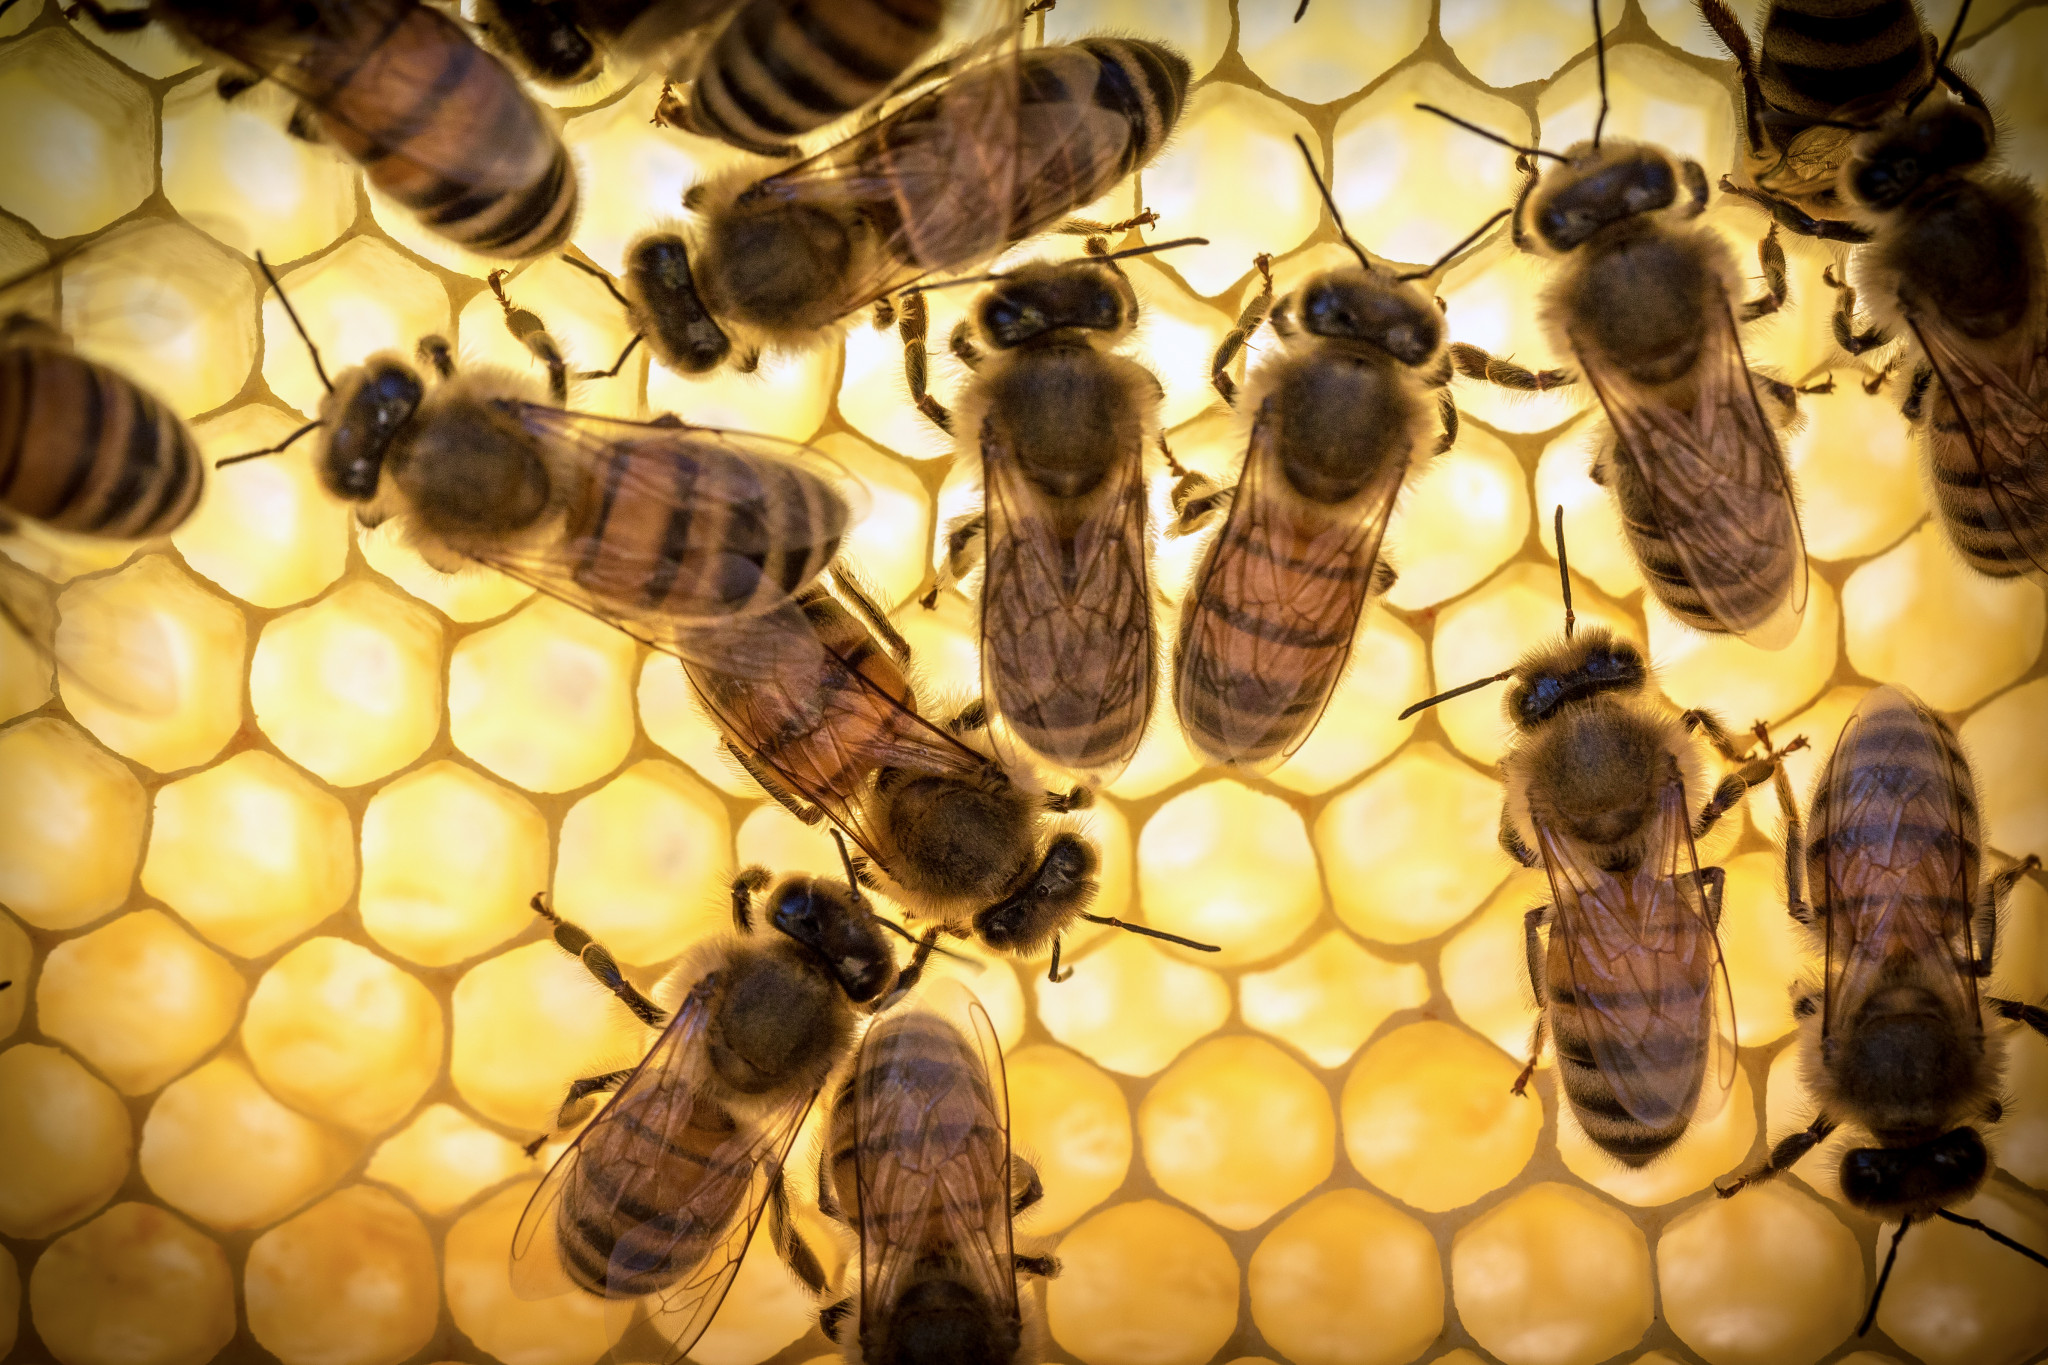 Bee хааны вазелиныг шөнө хэрэглэхийг зөвлөдөггүй бөгөөд түүний нөлөө нь мэдрэлийн үйл ажиллагаа болон нойргүйдэлд хүргэдэг